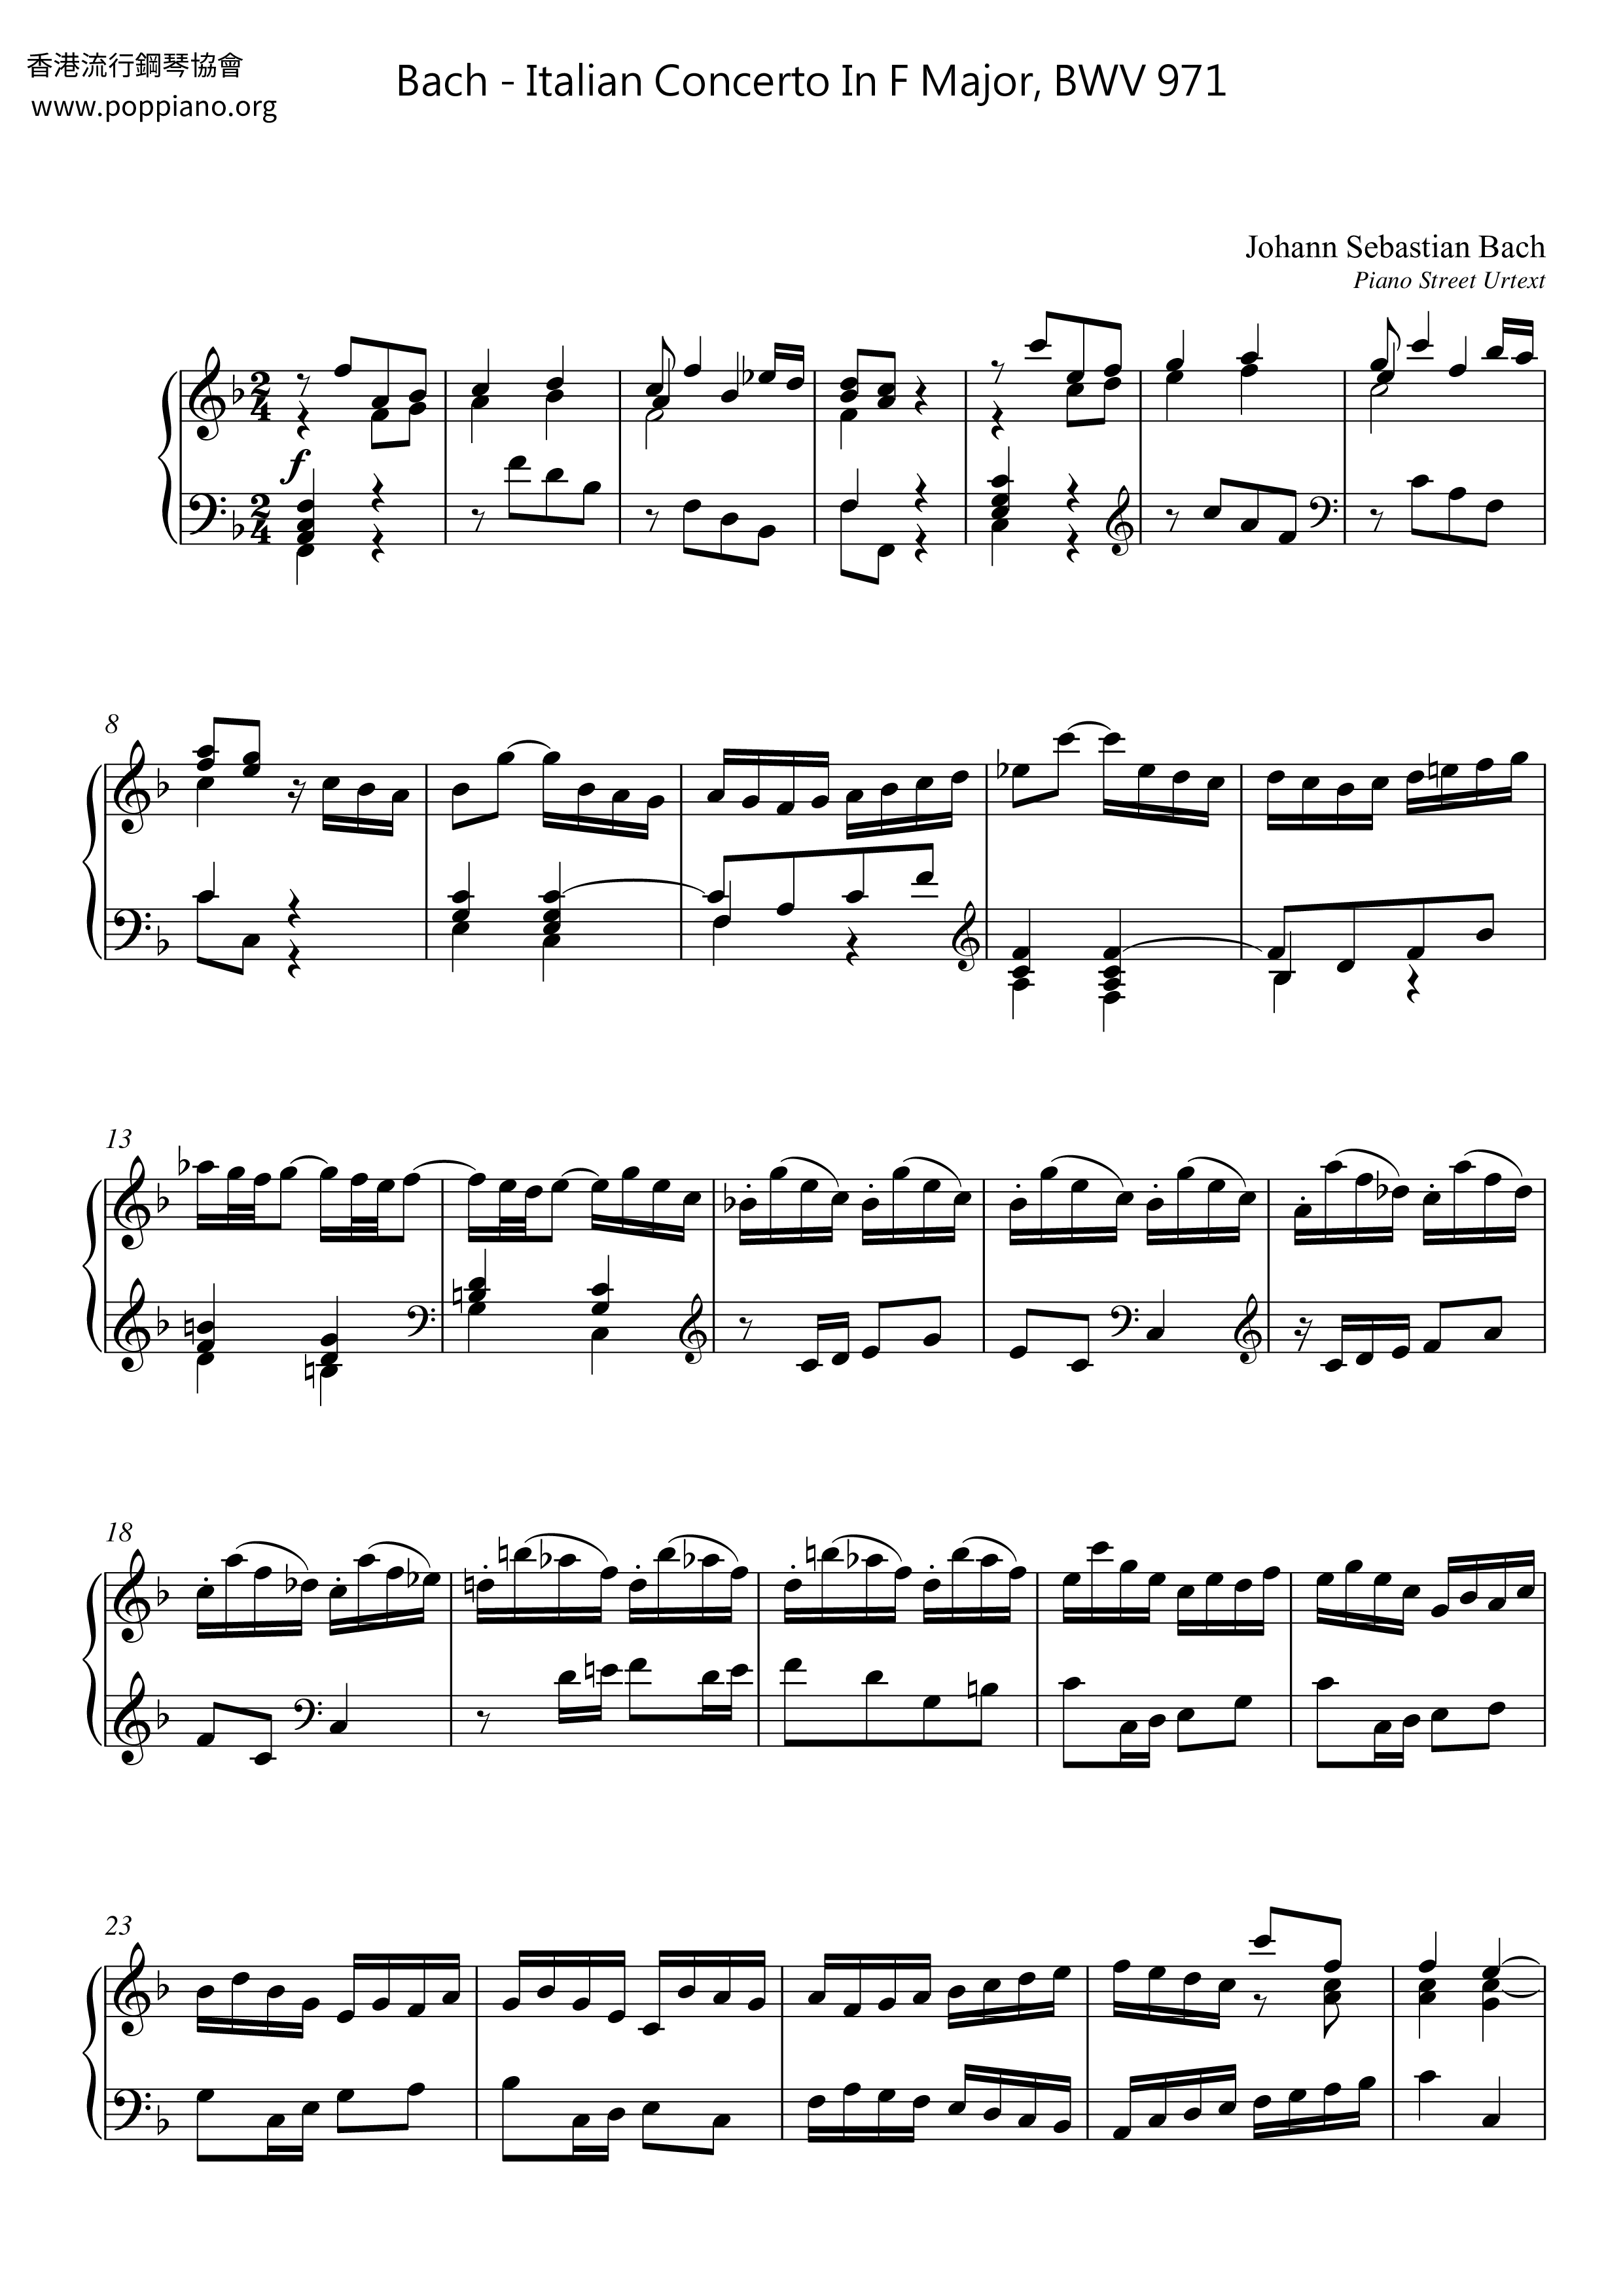 Italian Concerto In F Major, BWV 971 Score